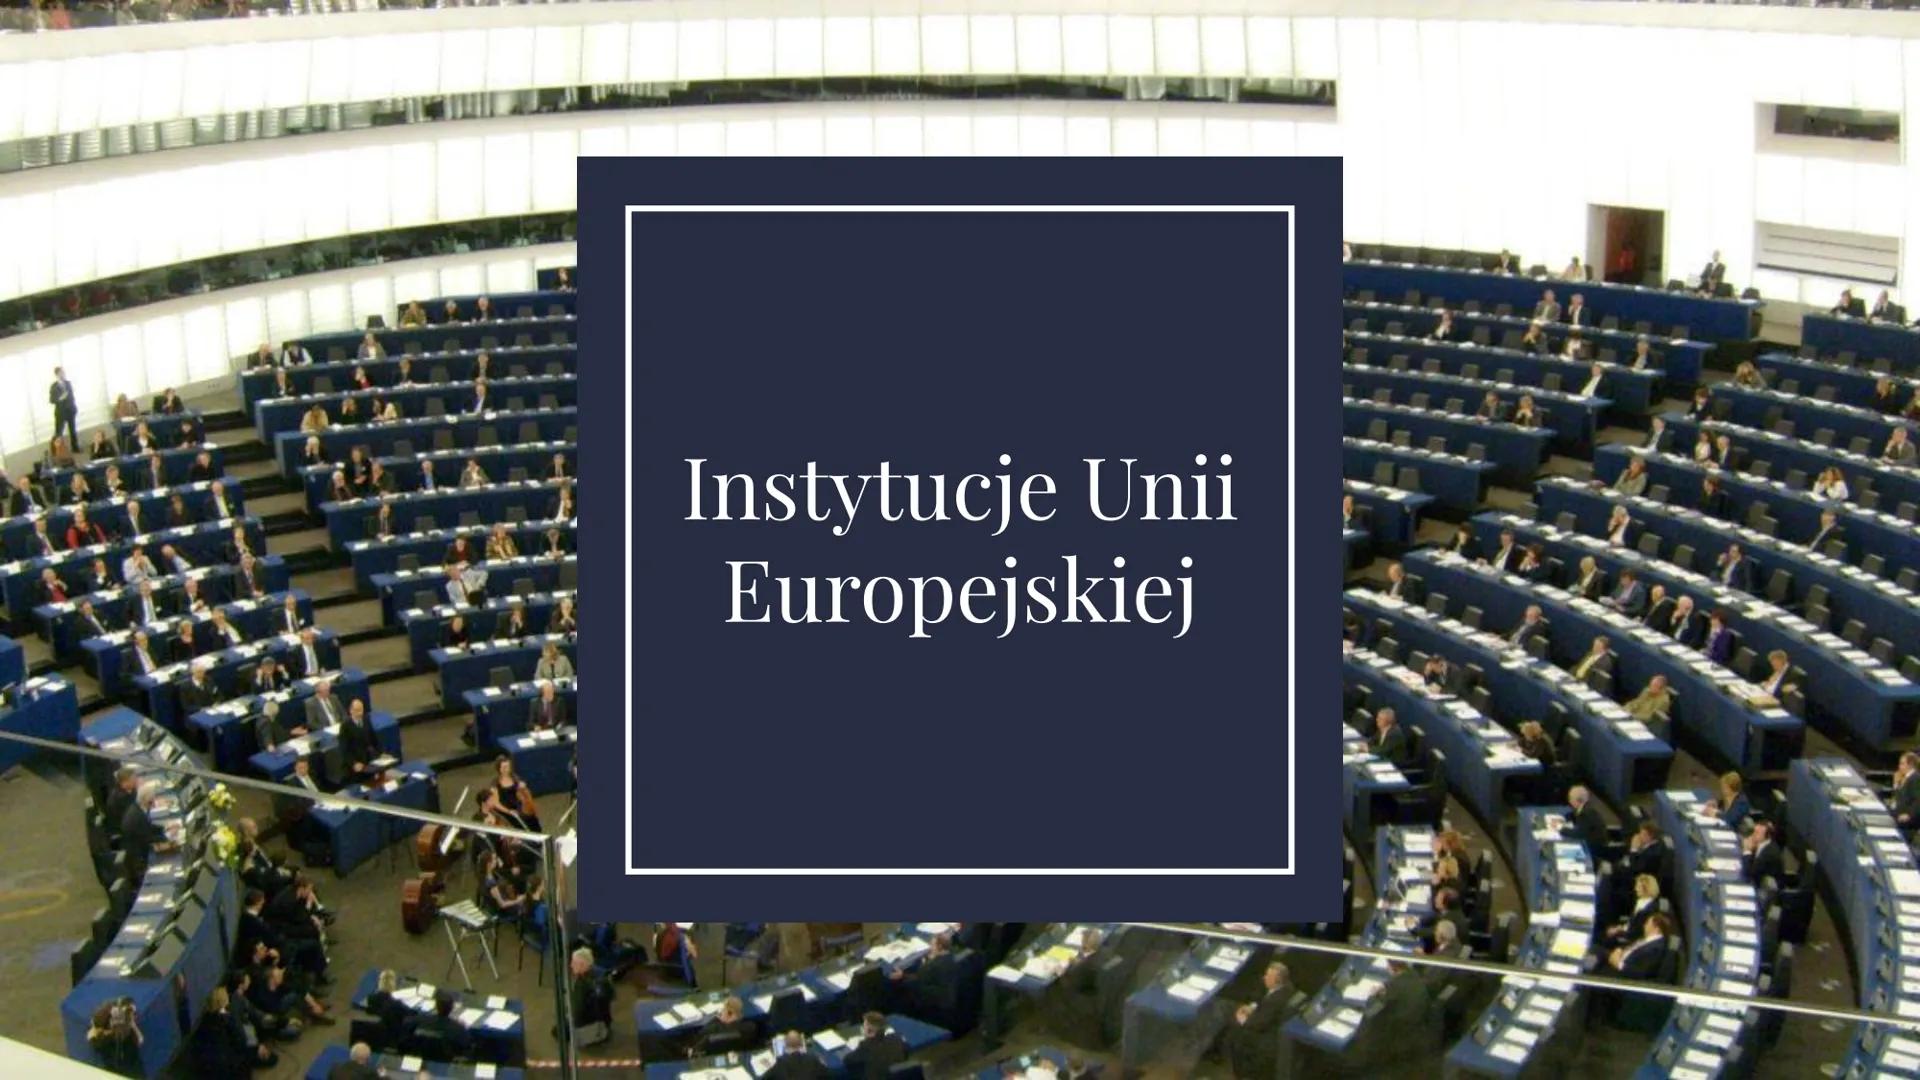 Instytucje Unii
Europejskiej Instytucje Unii Europejskiej:
Rada Europejska
Parlament Europejski
Rada Unii Europejskiej
➜→Komisja Europejska
